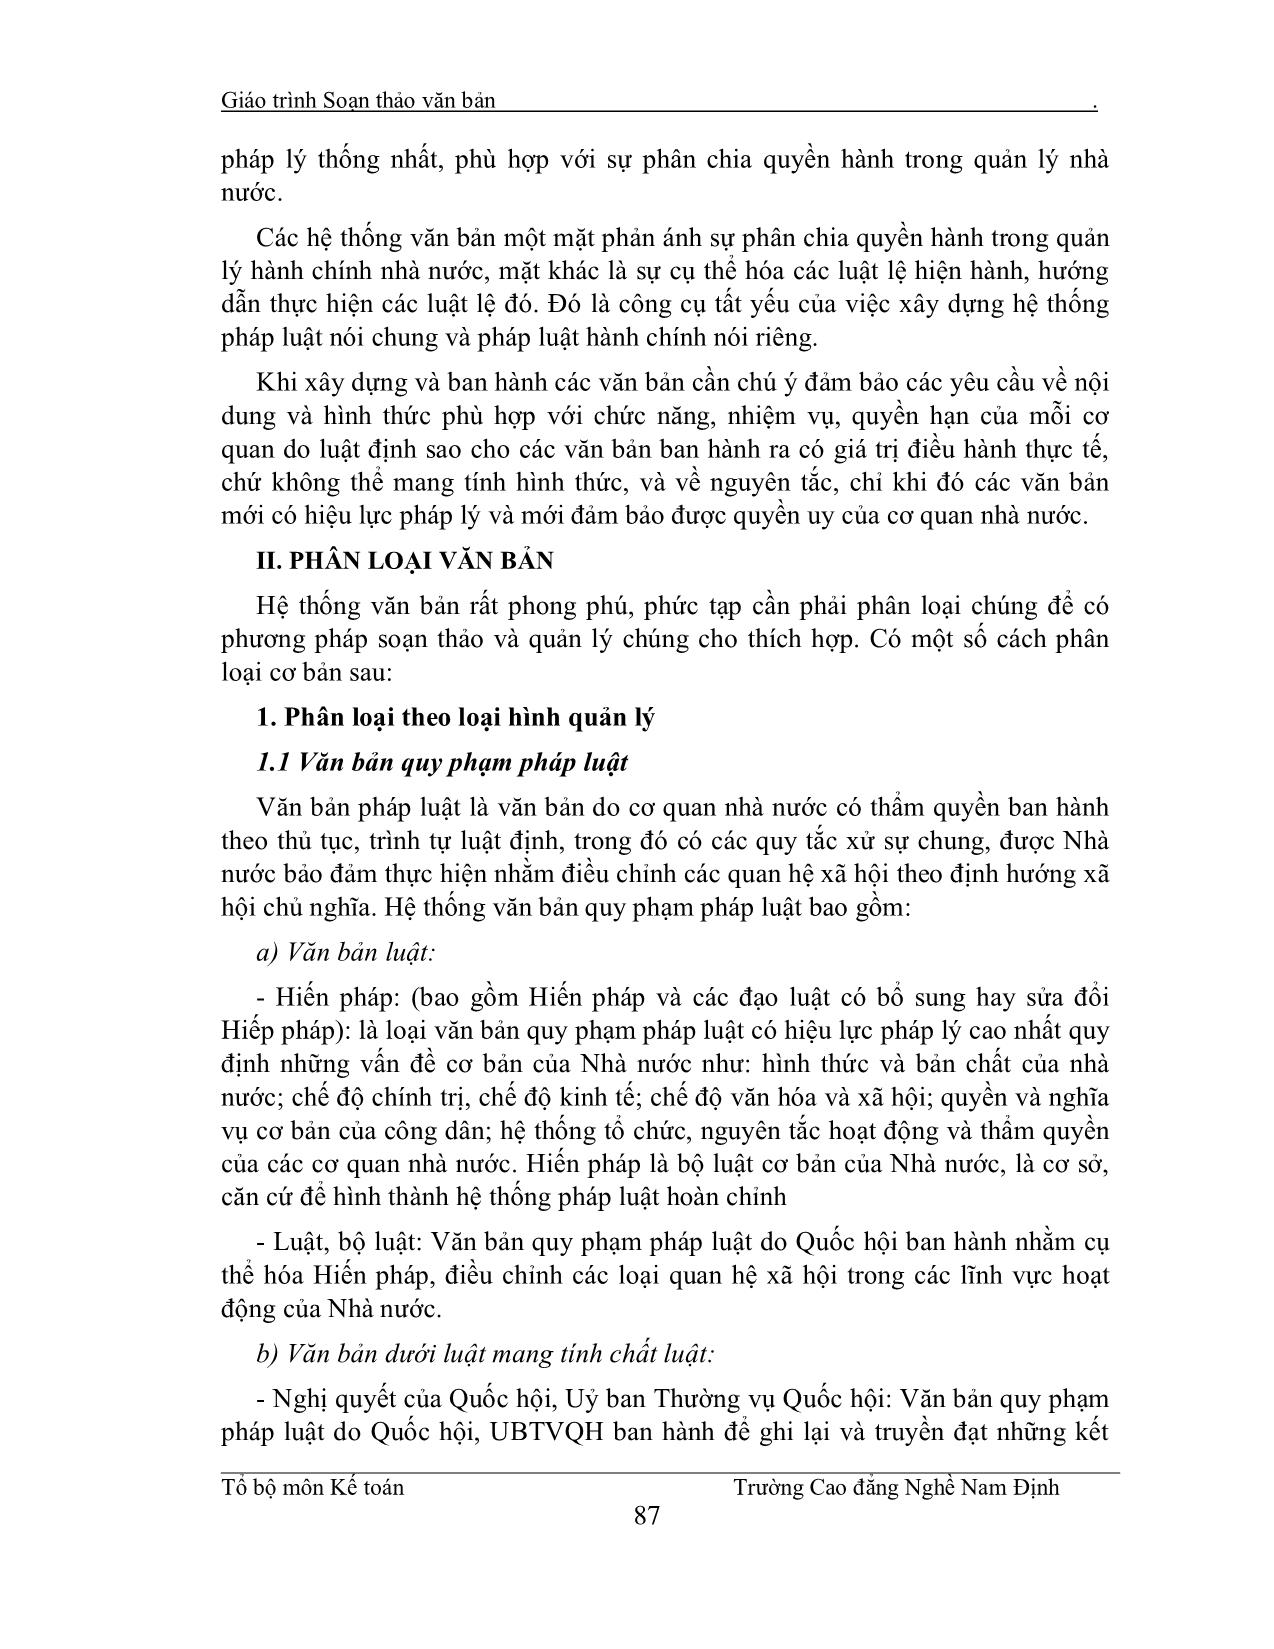 Giáo trình Soạn thảo văn bản (Phần 1) trang 5